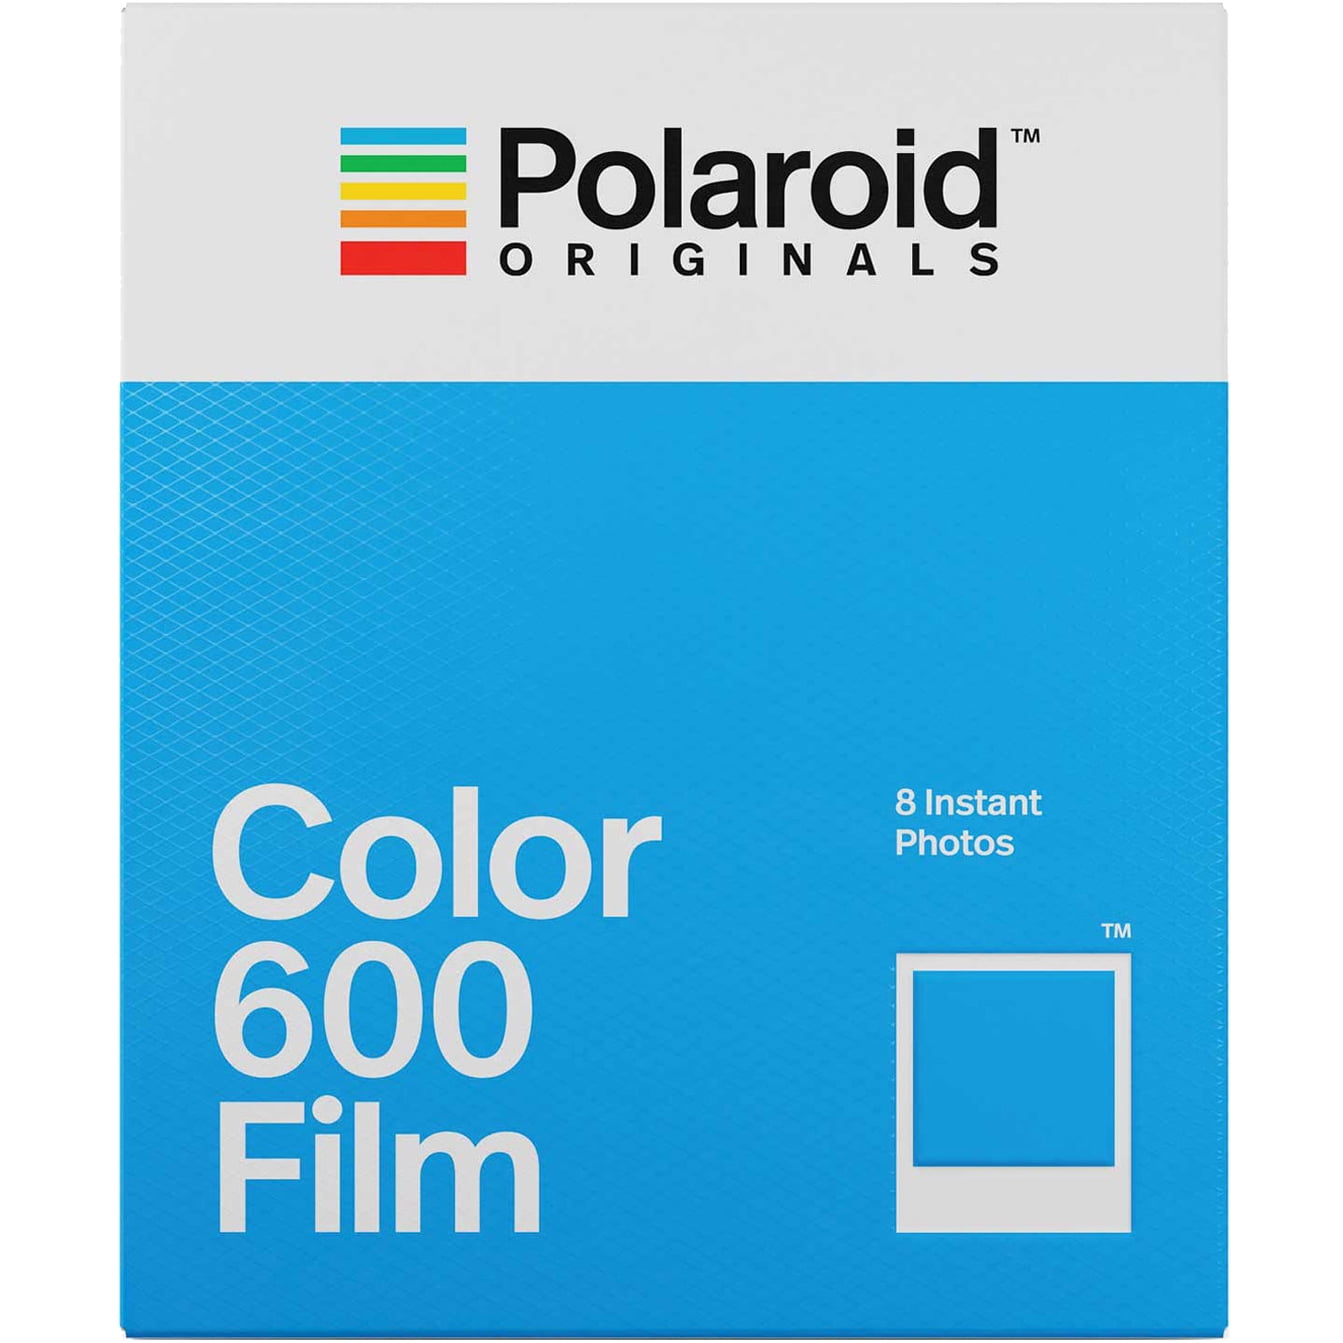 Pelagisch Bukken beschermen Polaroid Originals Color Film for 600 - Walmart.com